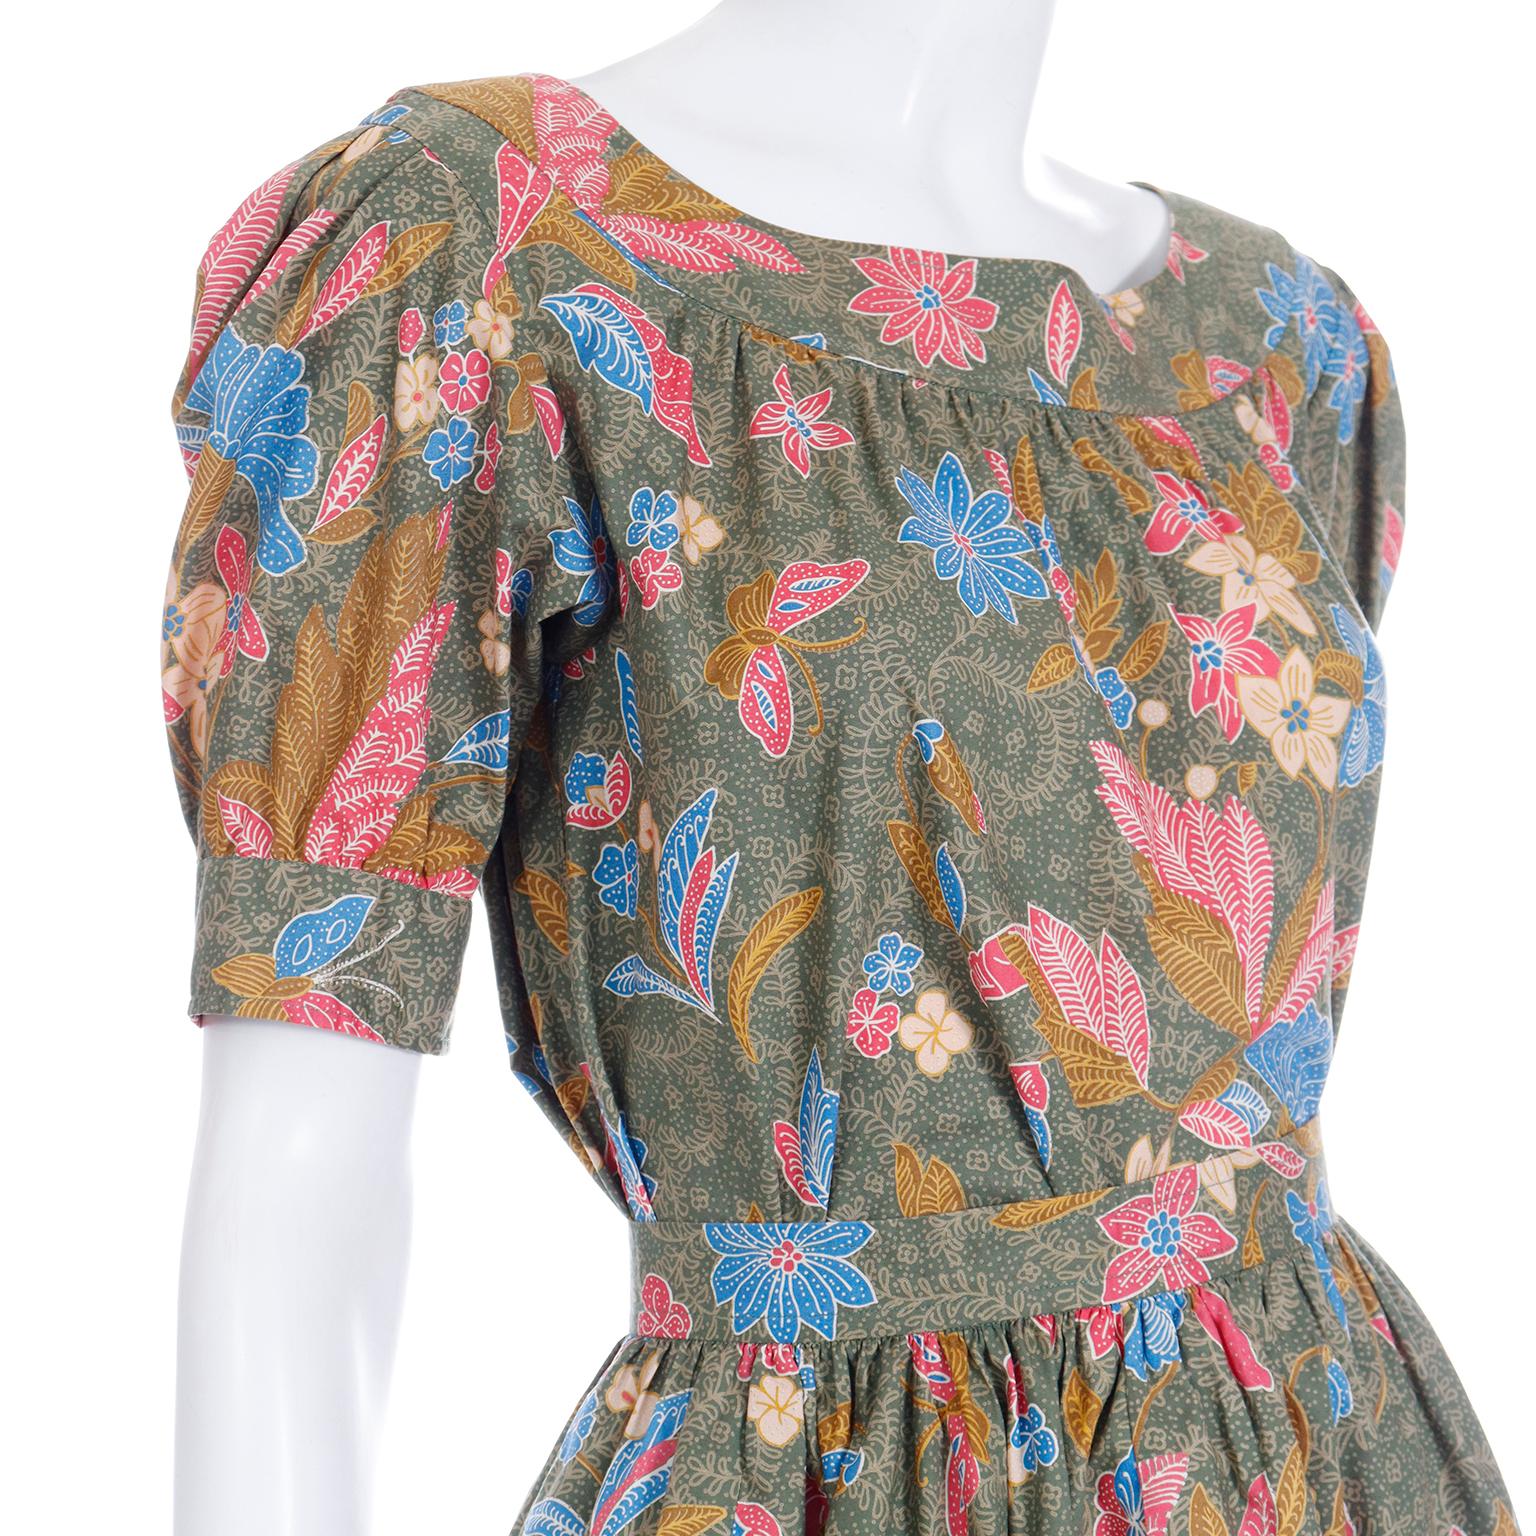 S/S 1986 Yves Saint Laurent Vintage YSL Botanical Blouse & Skirt 2 Pc Dress For Sale 1